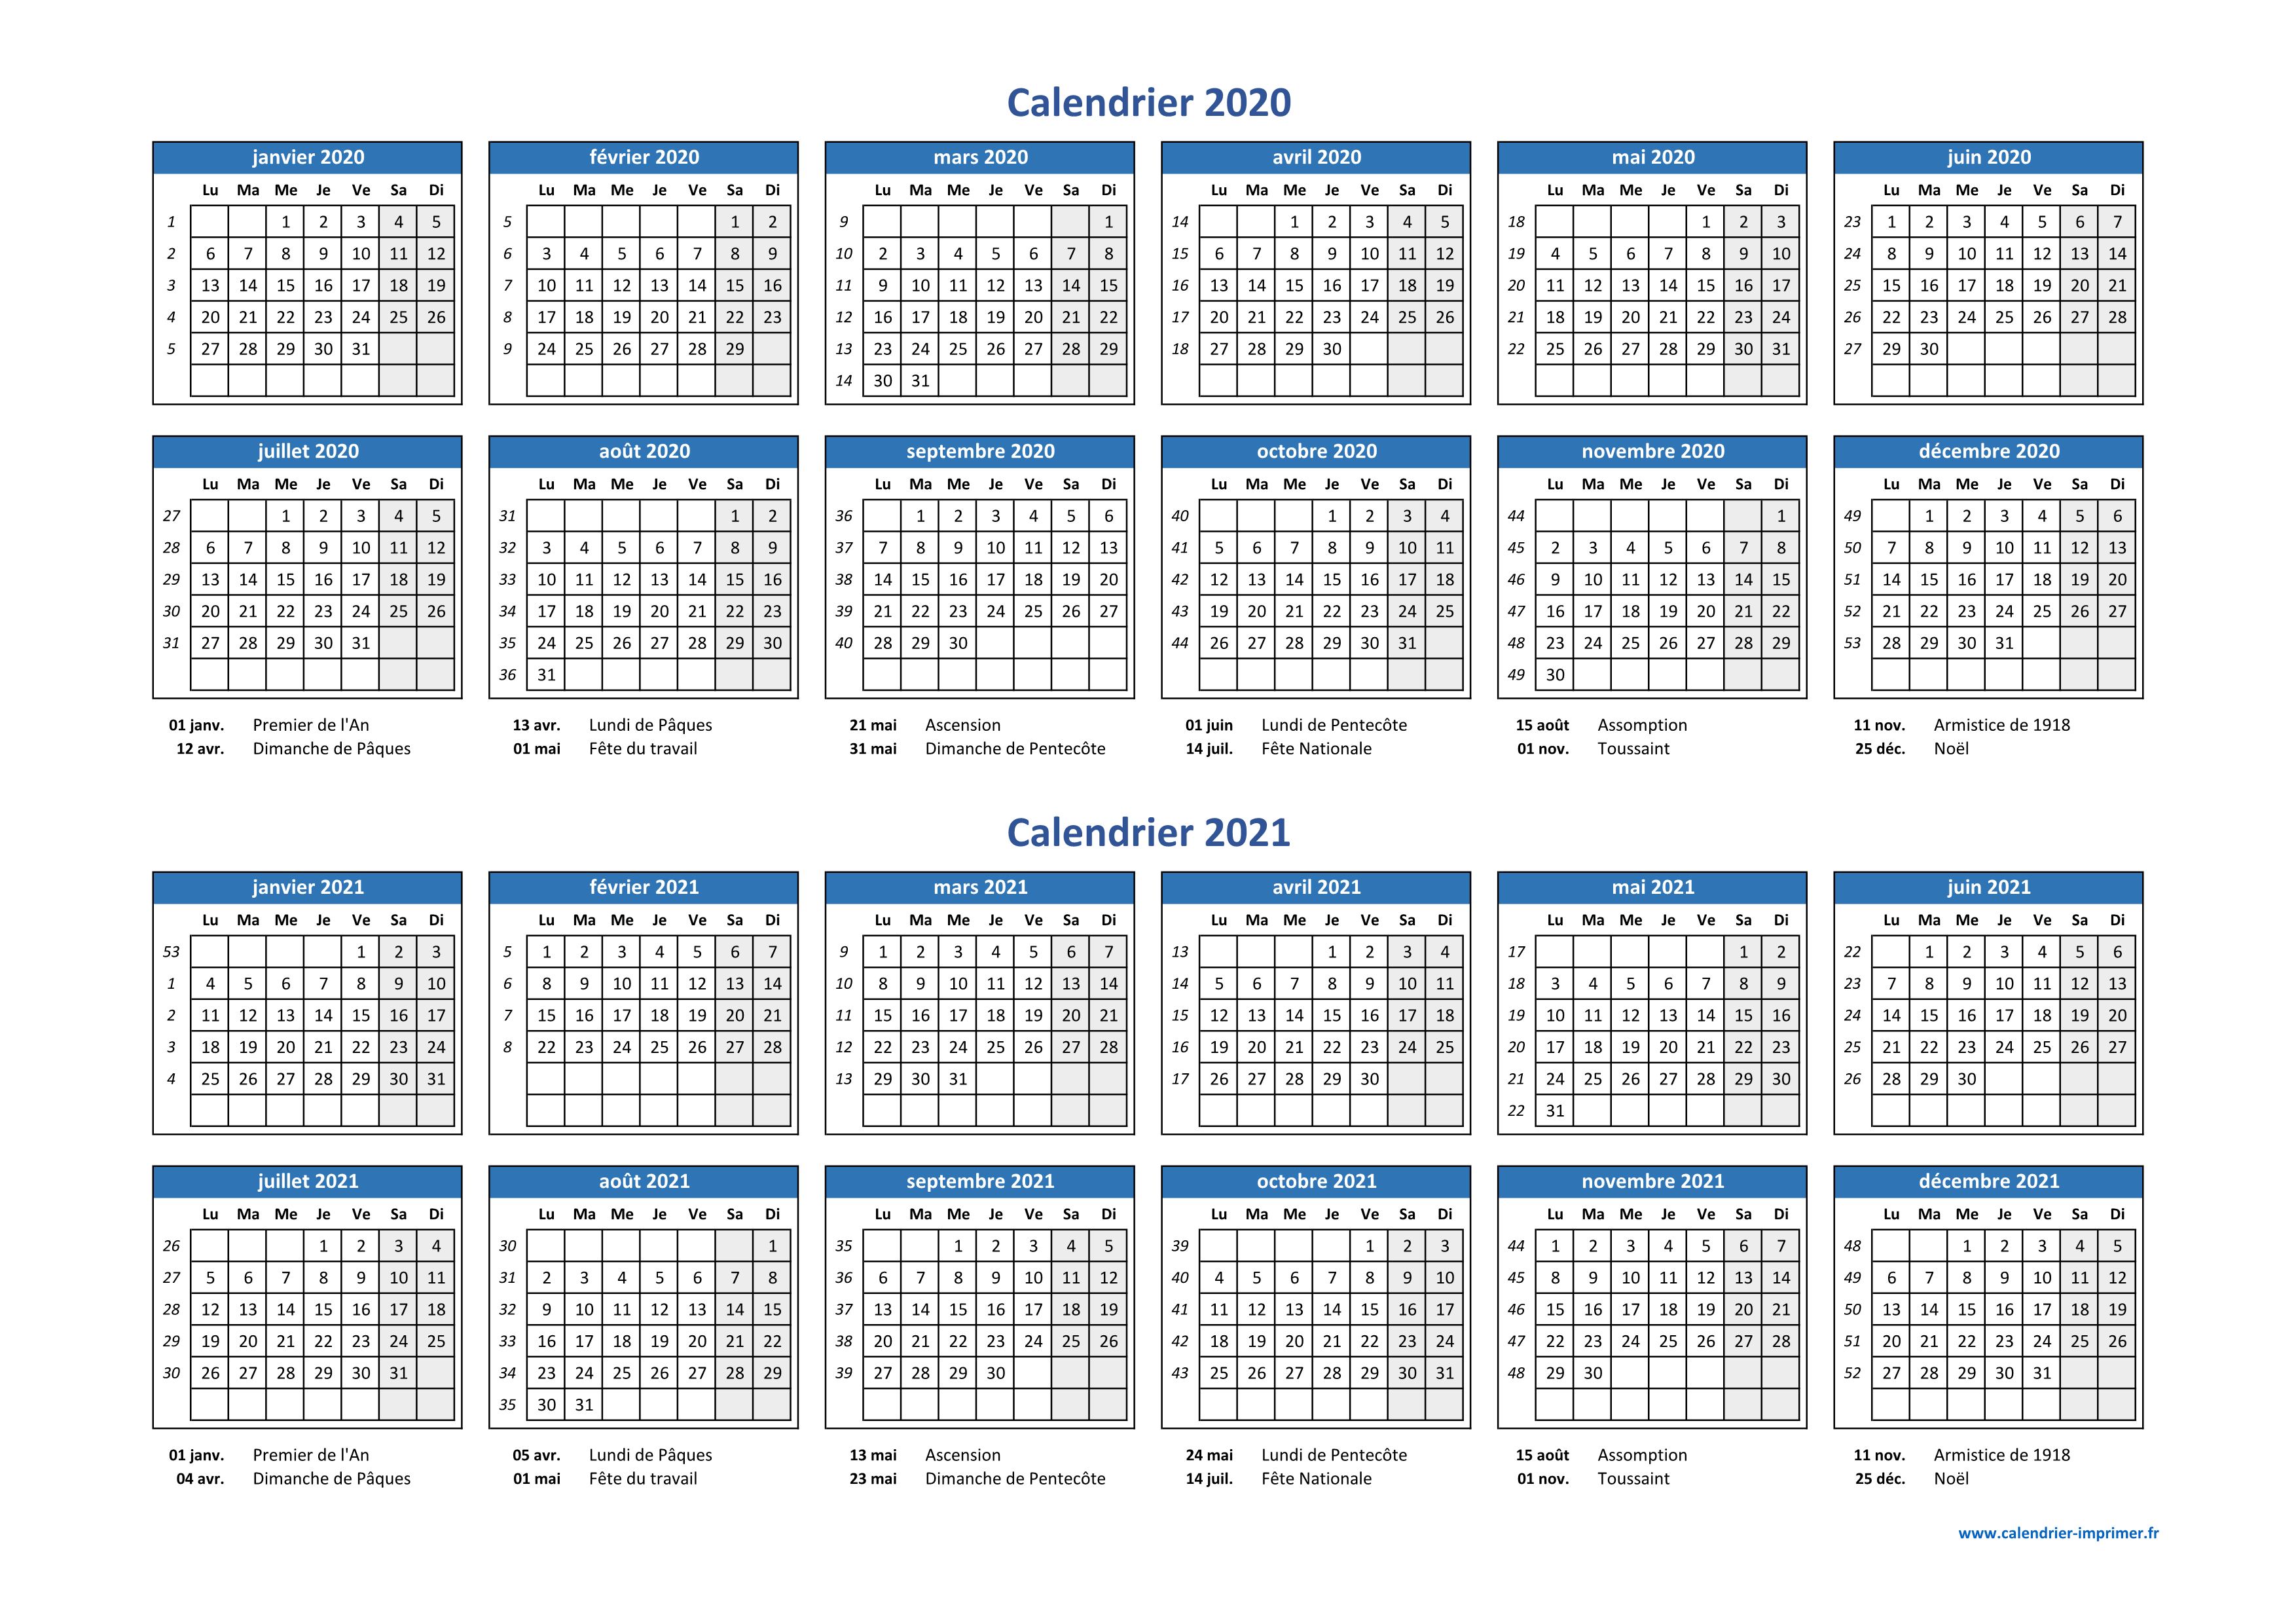 Calendrier 2020 à imprimer : jours fériés, vacances, numéros de